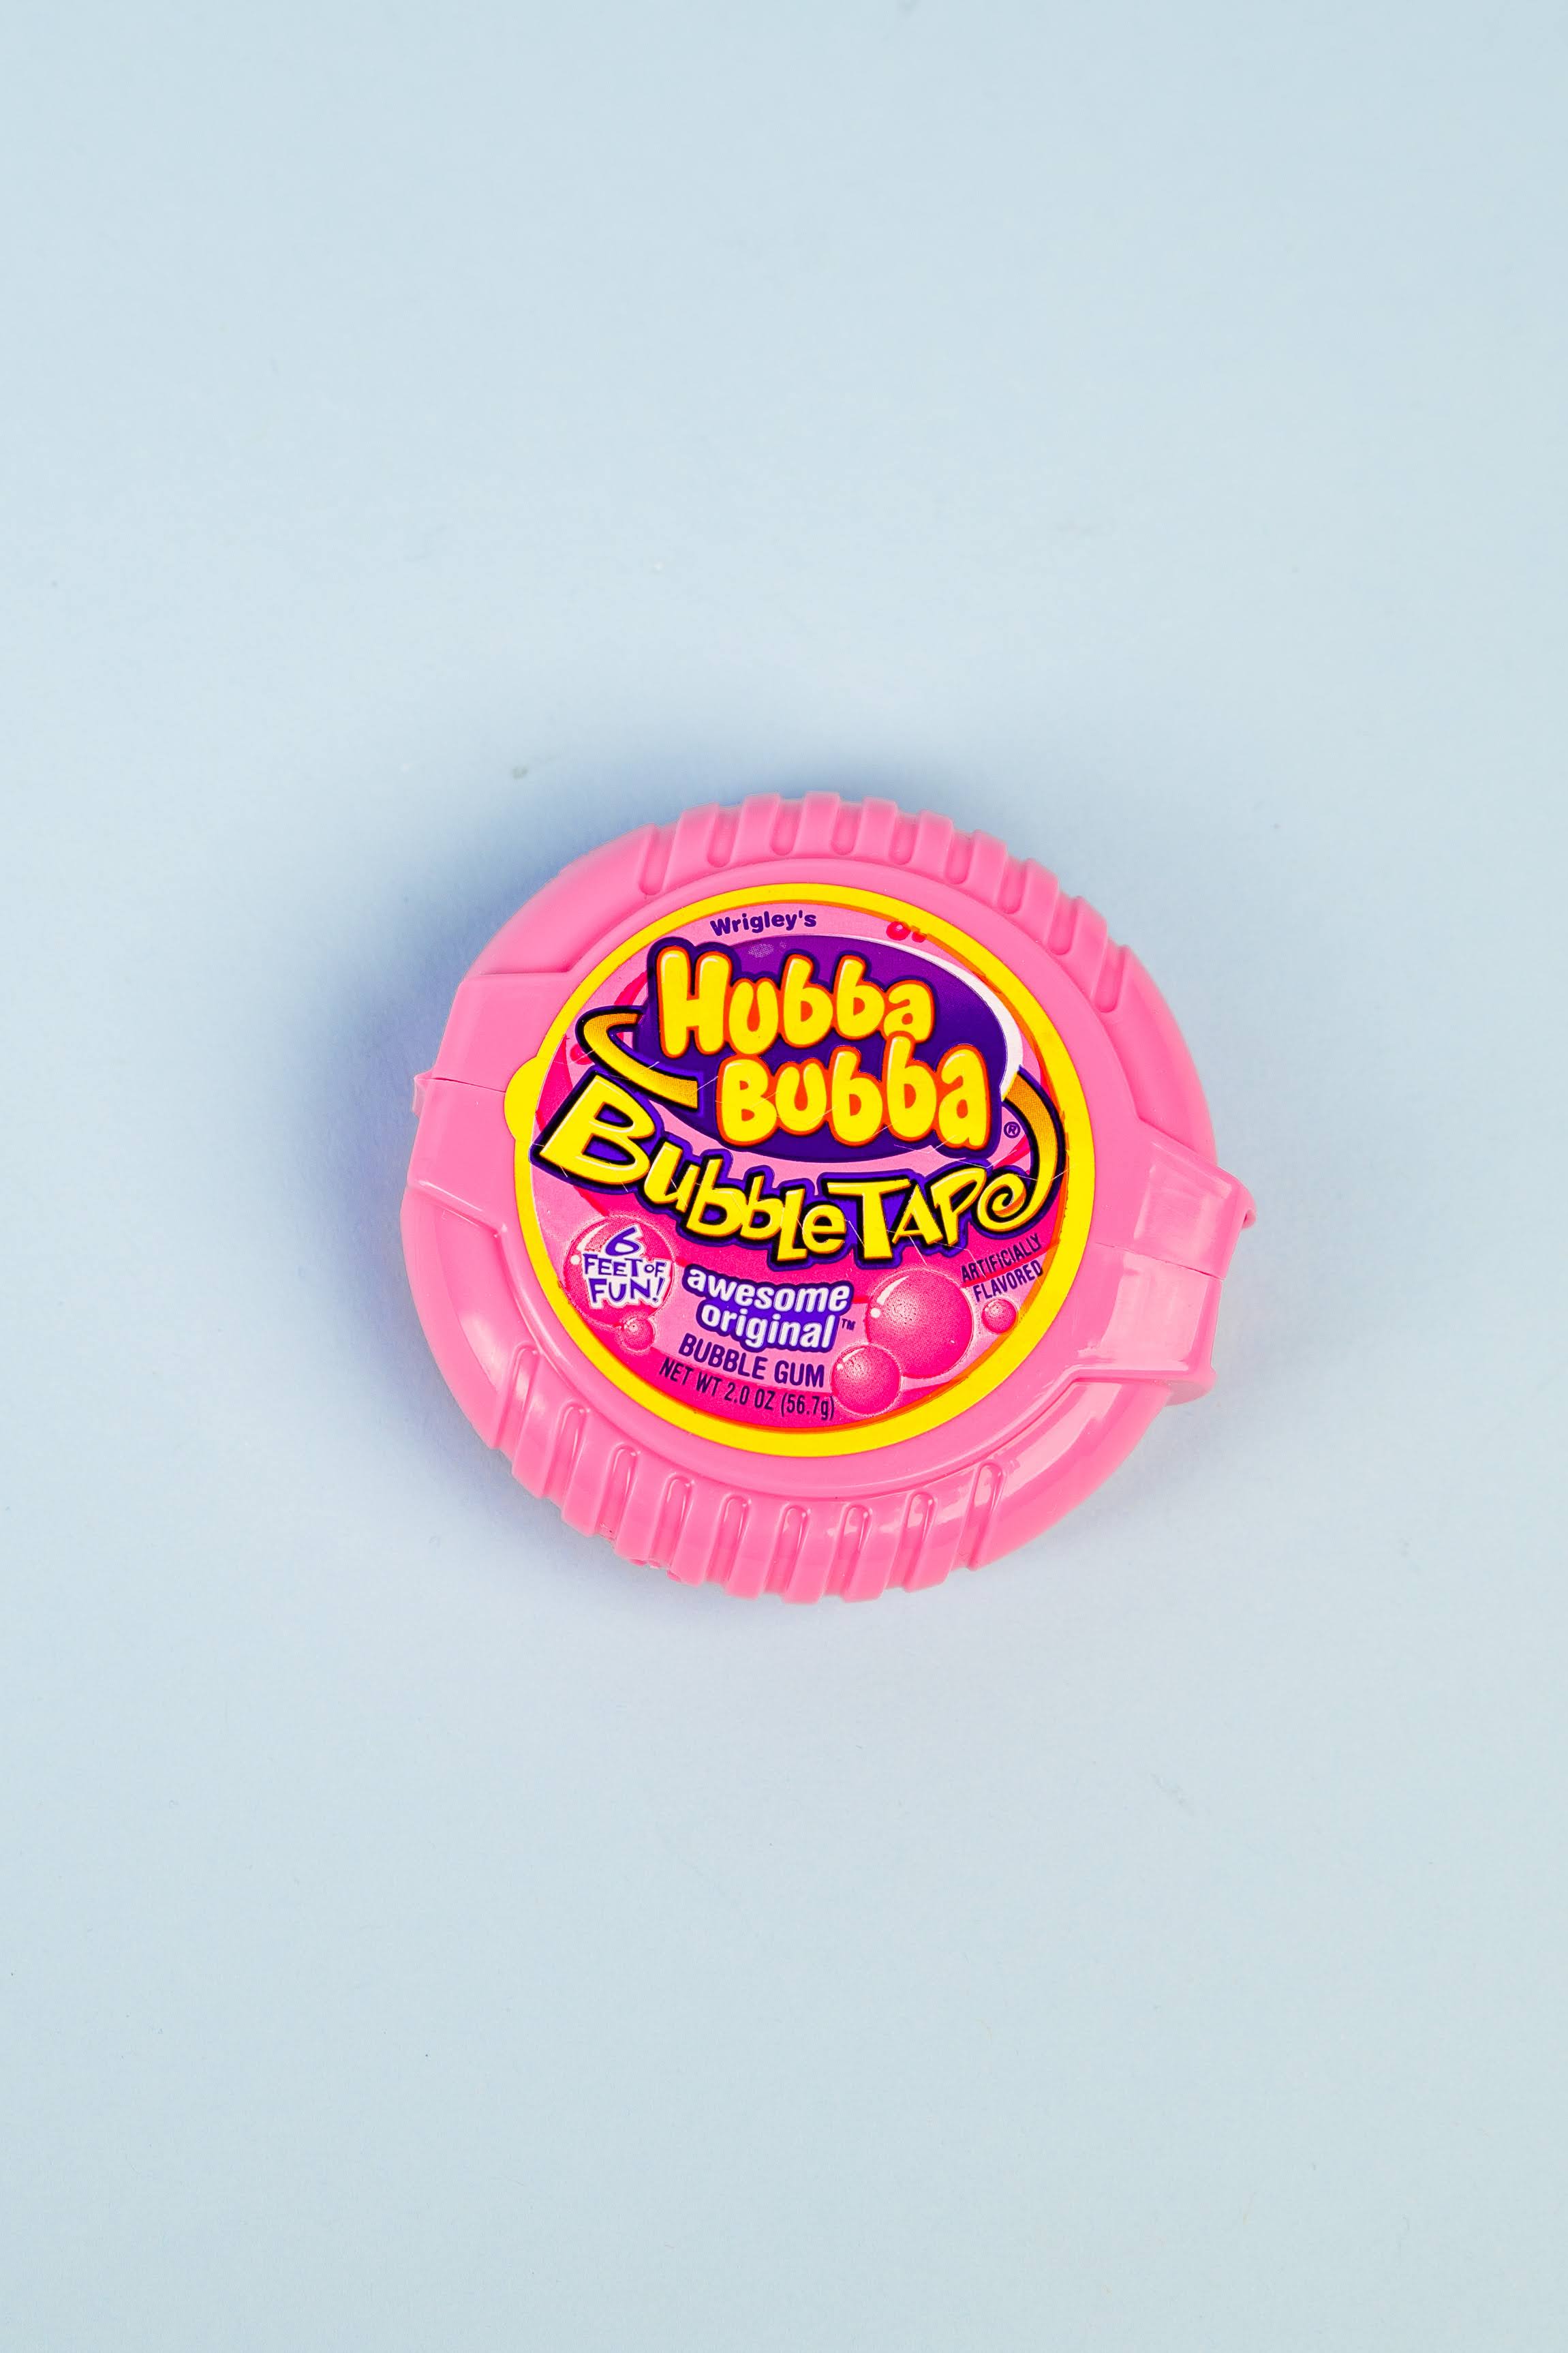 1 Hubba Bubba Bubble Tape 